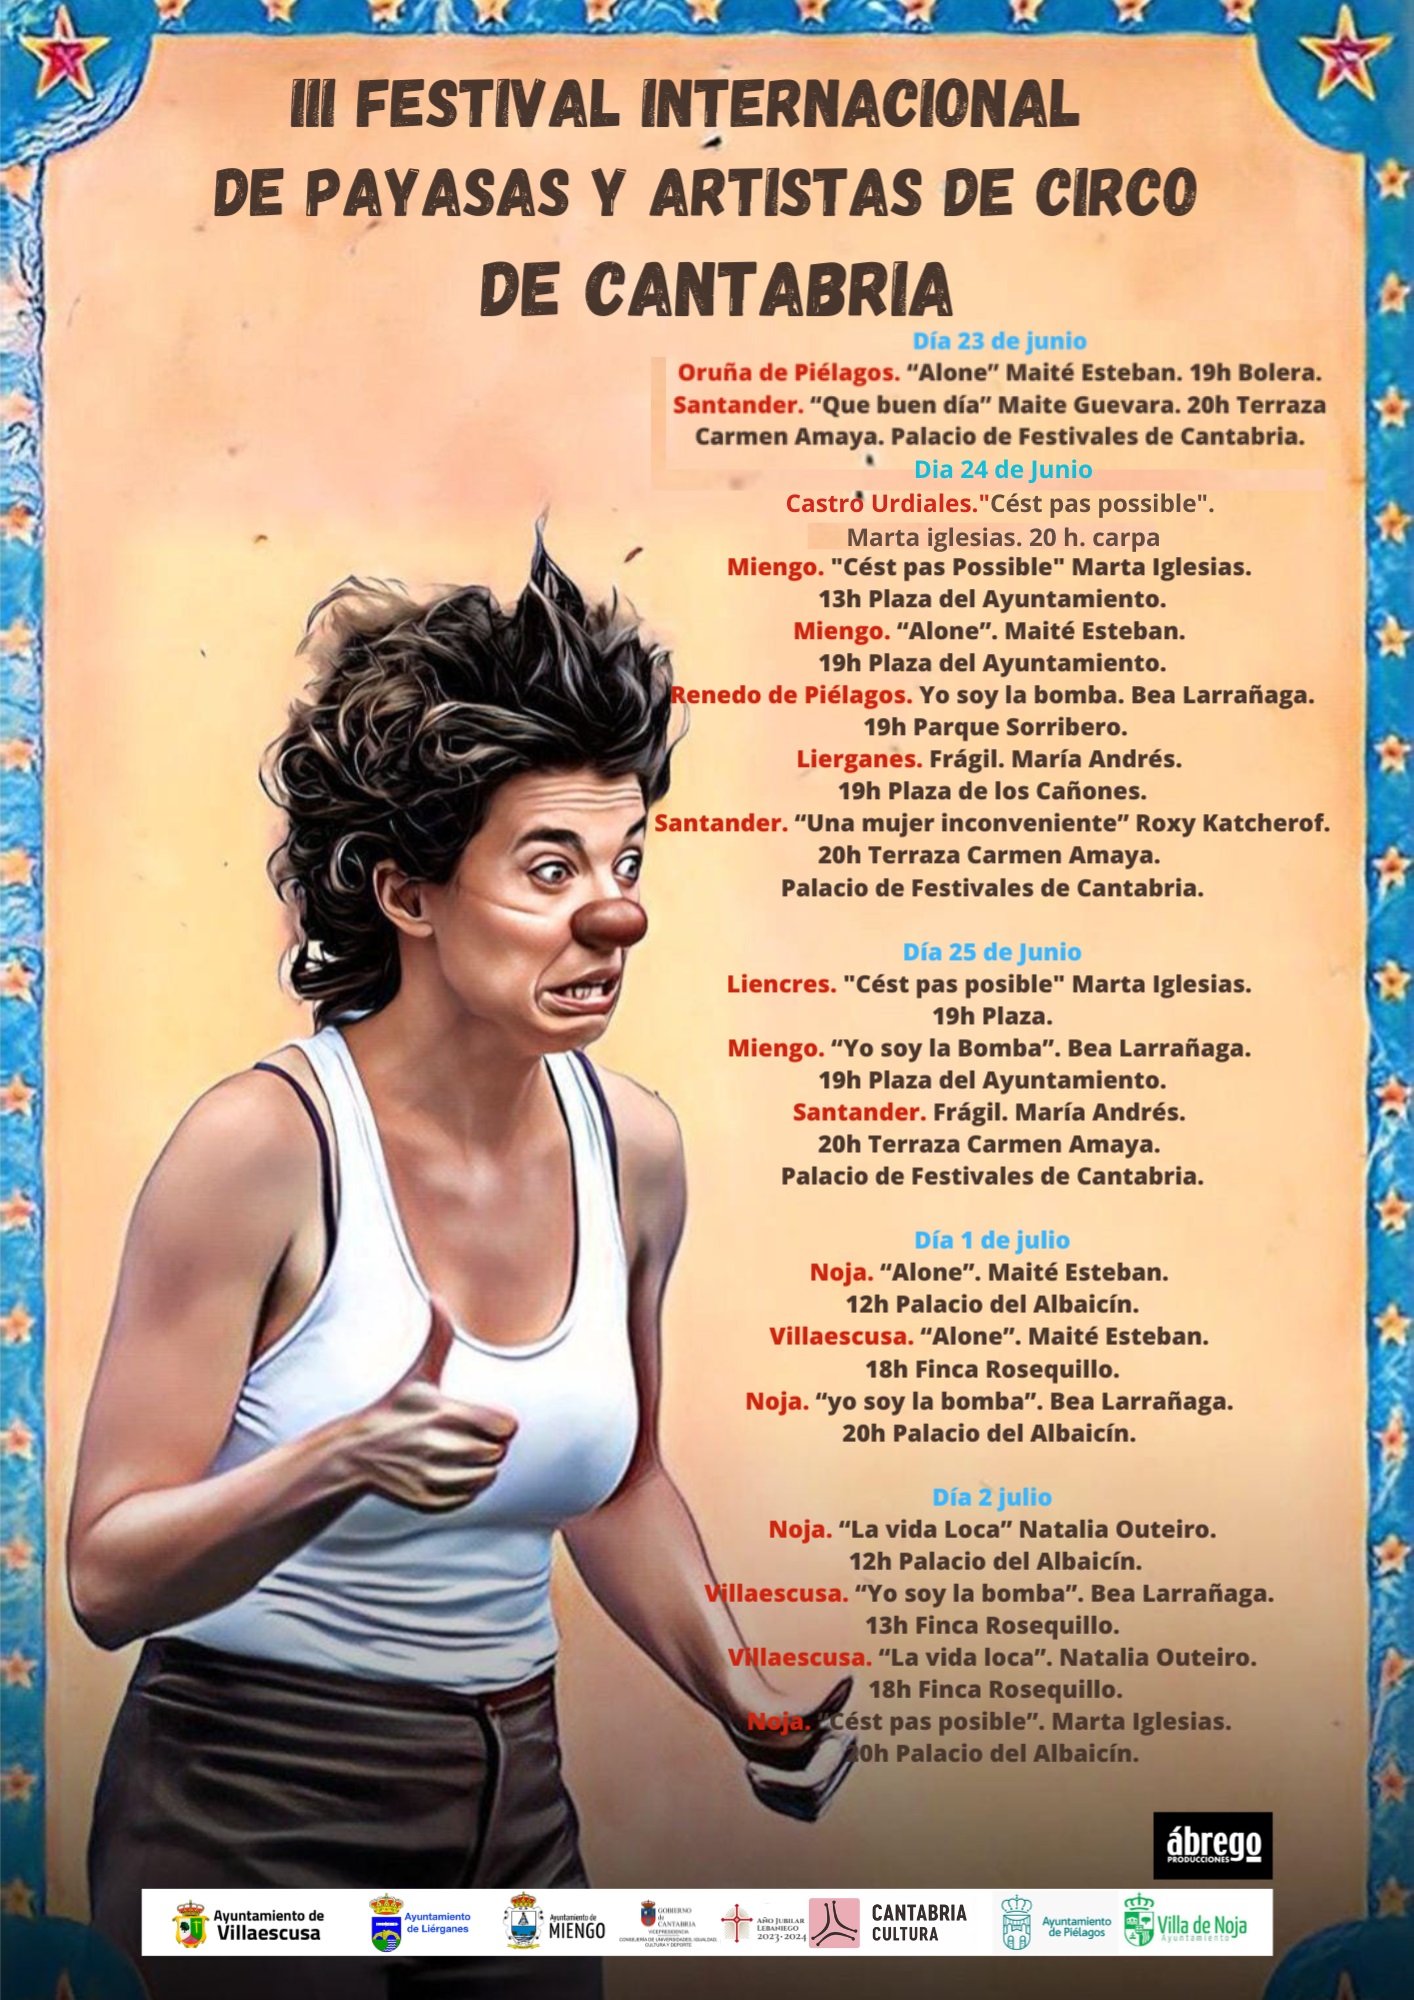 III Festival Internacional de Payasas y Artistas de Circo de Cantabria